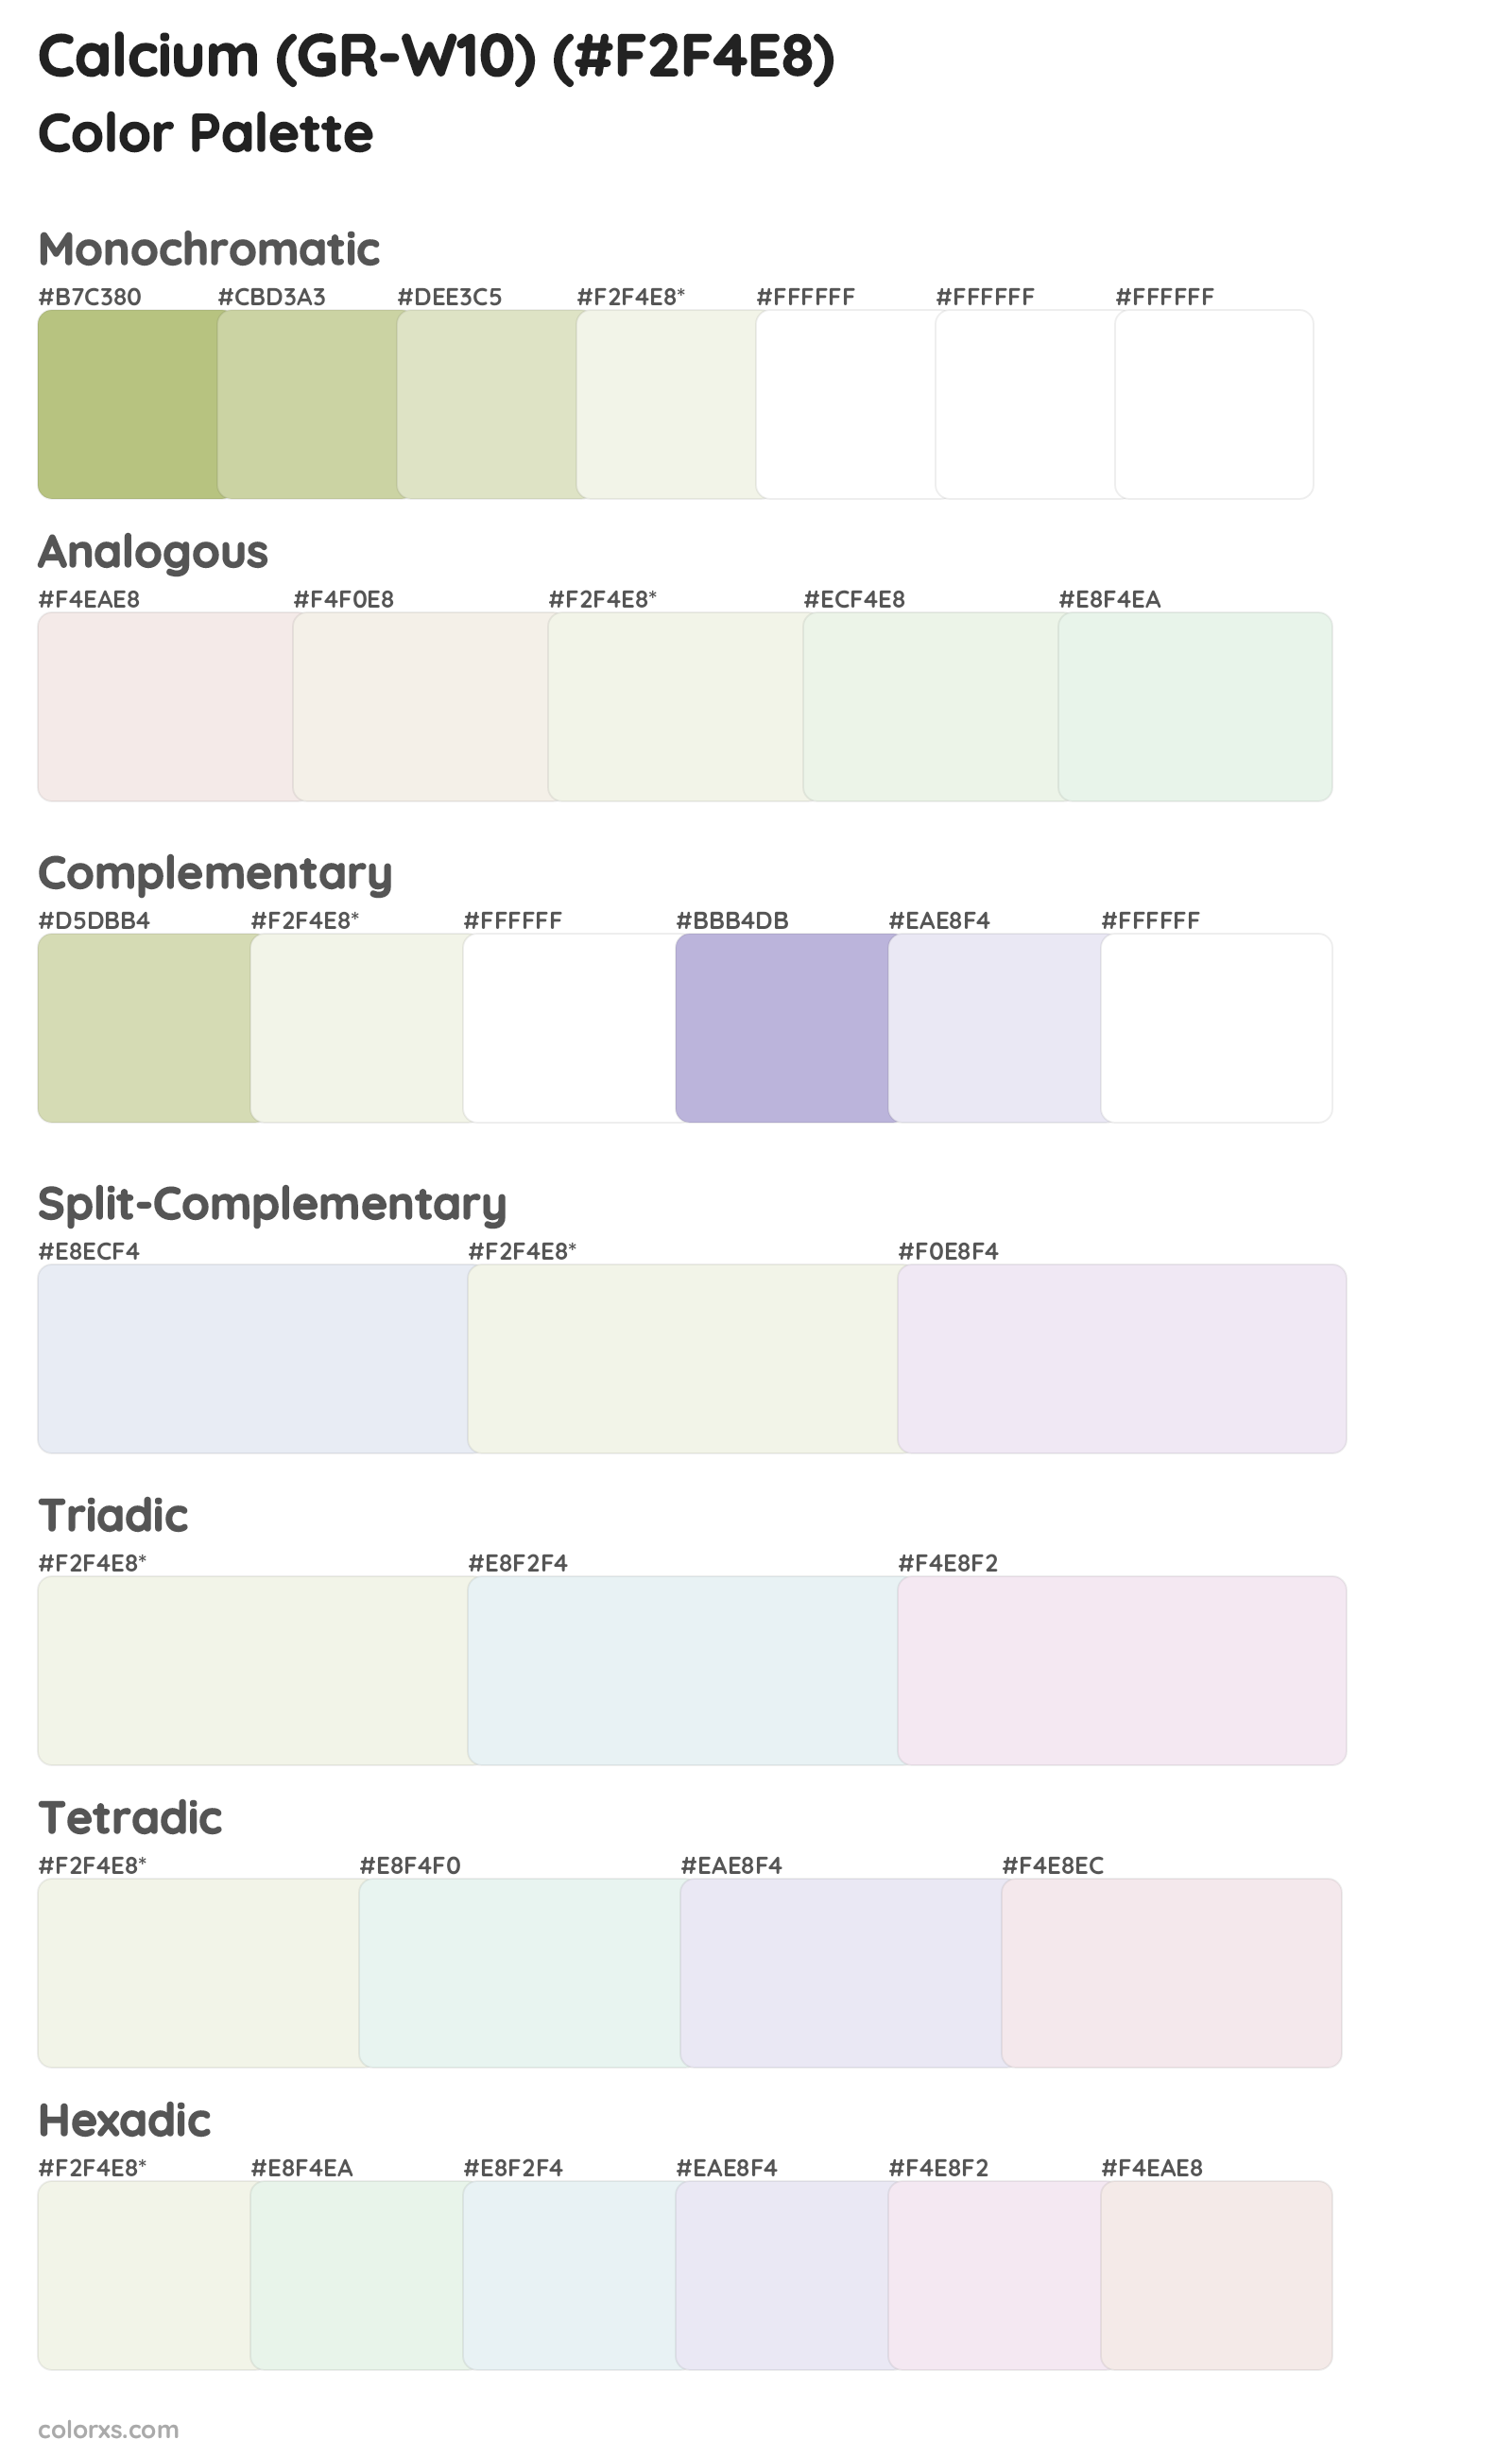 Calcium (GR-W10) Color Scheme Palettes